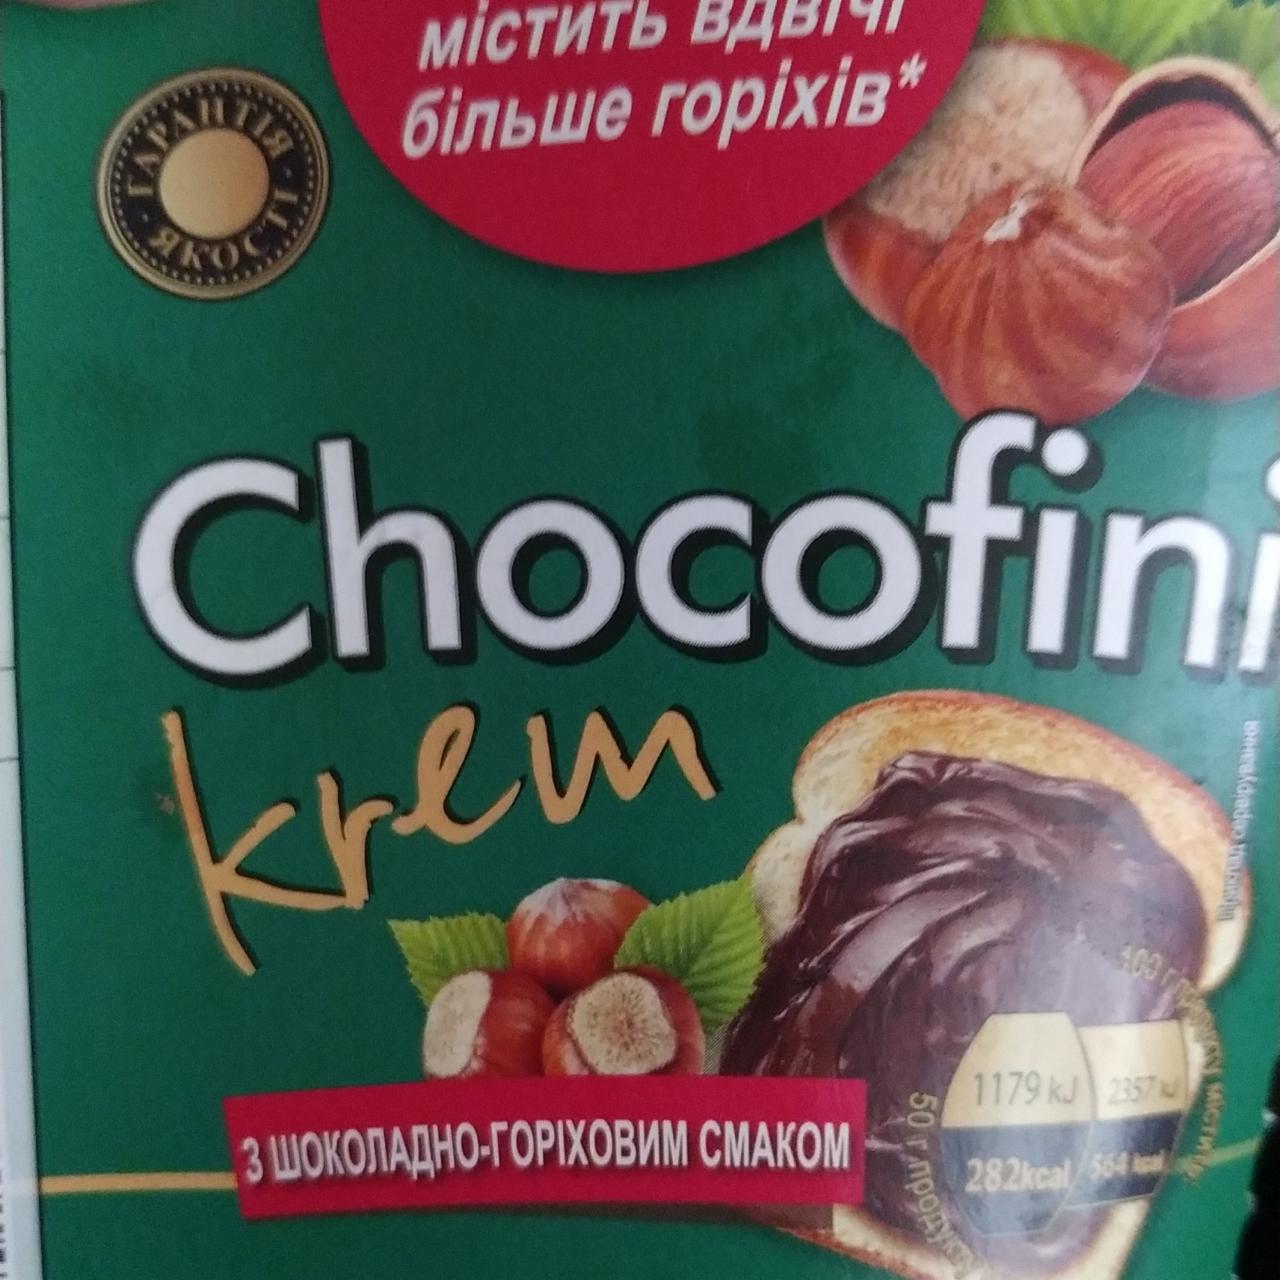 Фото - Крем з шокладно-горіховим смаком Chocofini